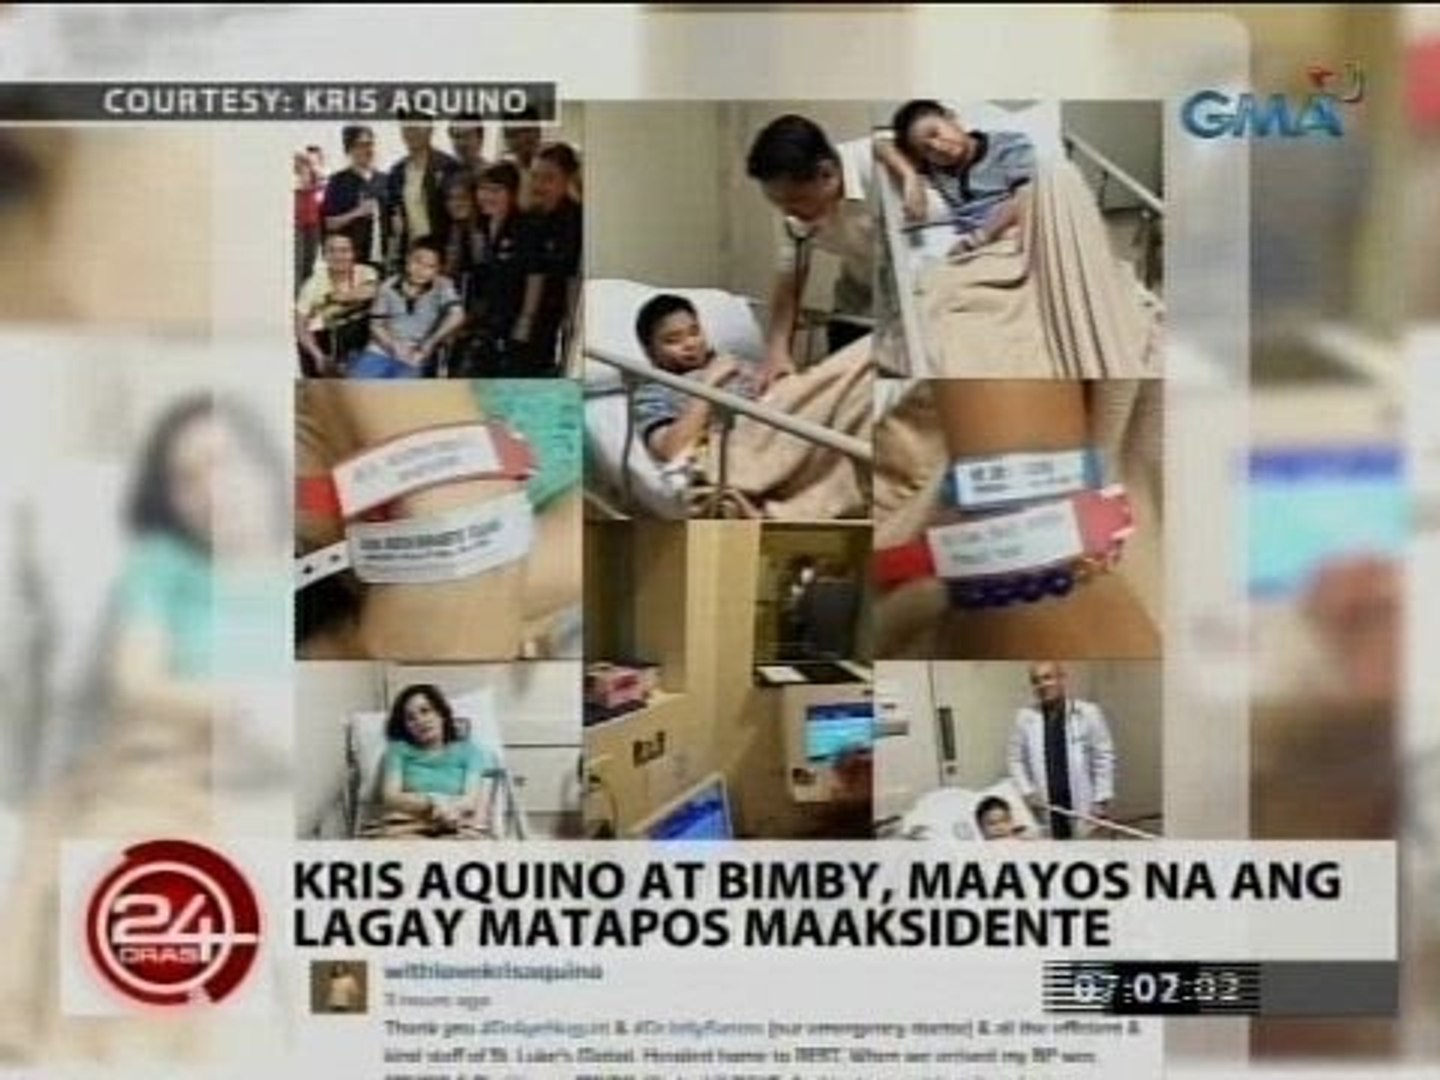 24 Oras: Kris Aquino at Bimby, maayos na ang lagay matapos maaksidente